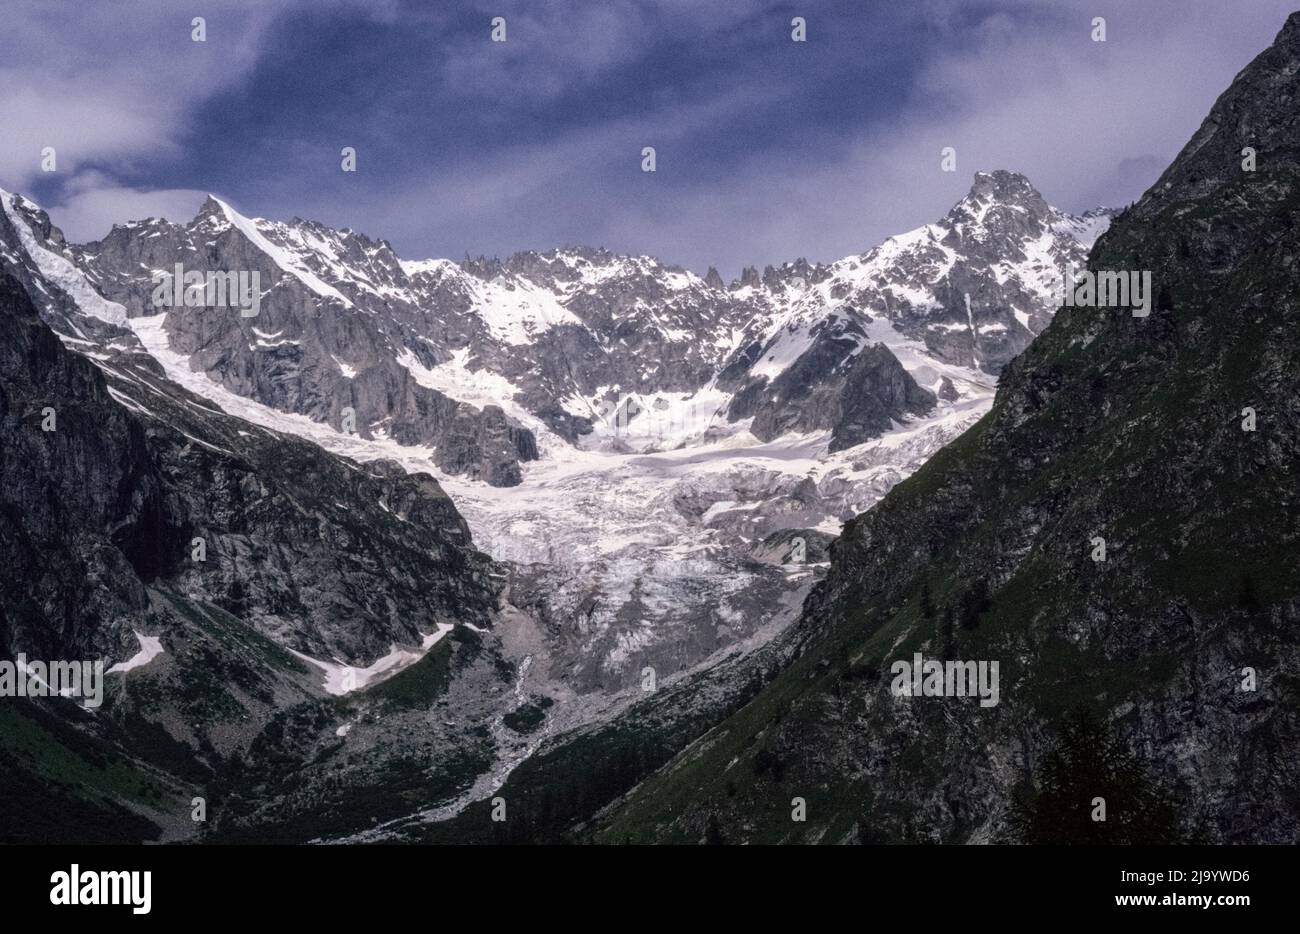 Glacier d'Argentière as seen from Val Ferret. Le Tour Noir mit Aiguilles Rouges du Dolent, La Fouly, Valais, Switzerland, 1988 Stock Photo